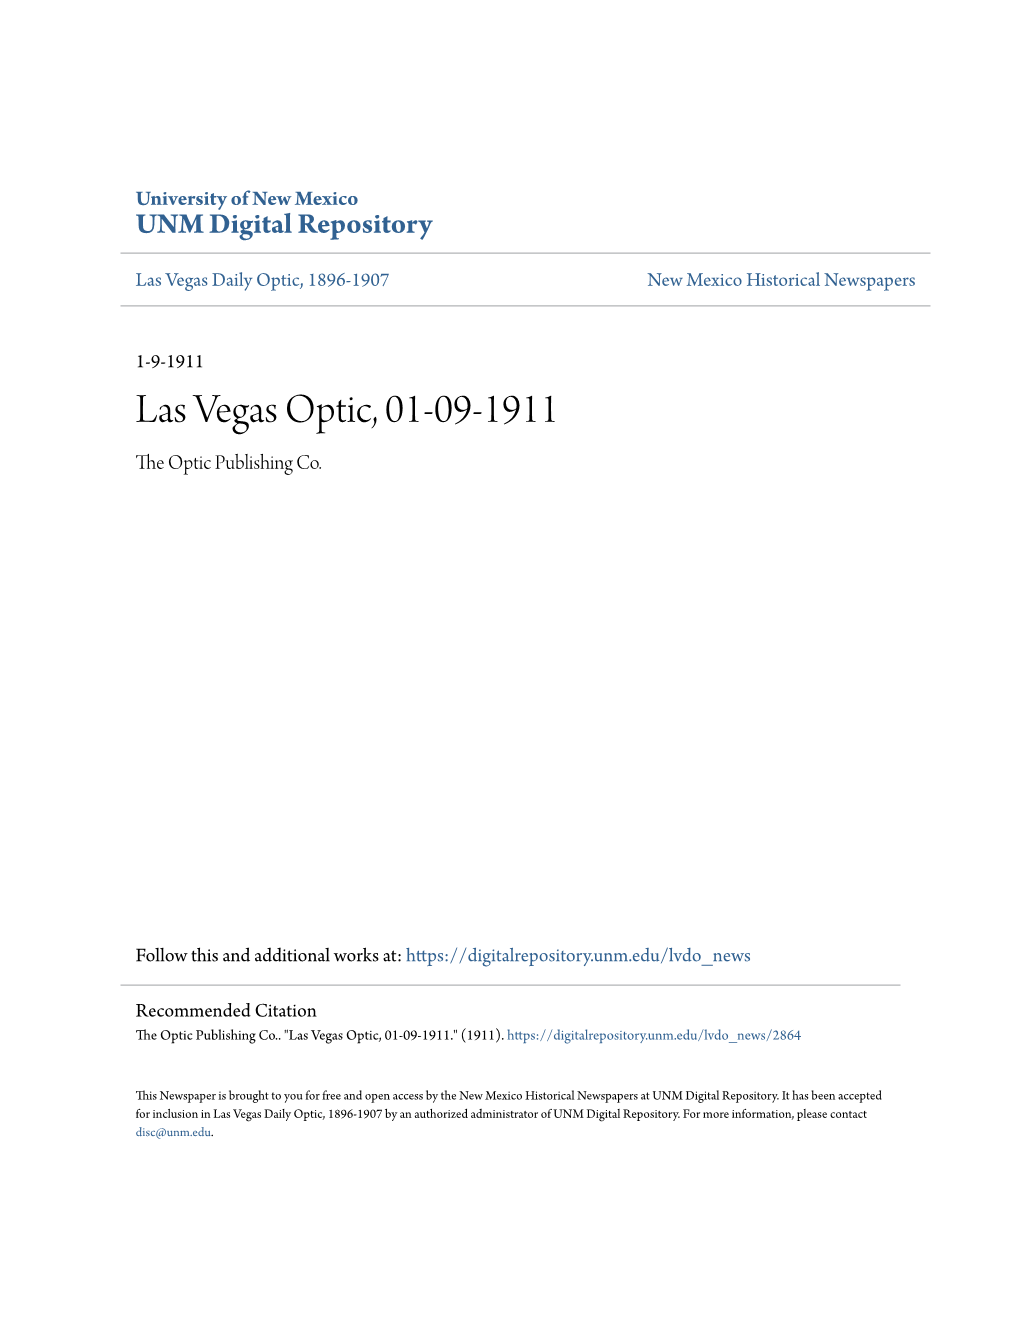 Las Vegas Optic, 01-09-1911 the Optic Publishing Co